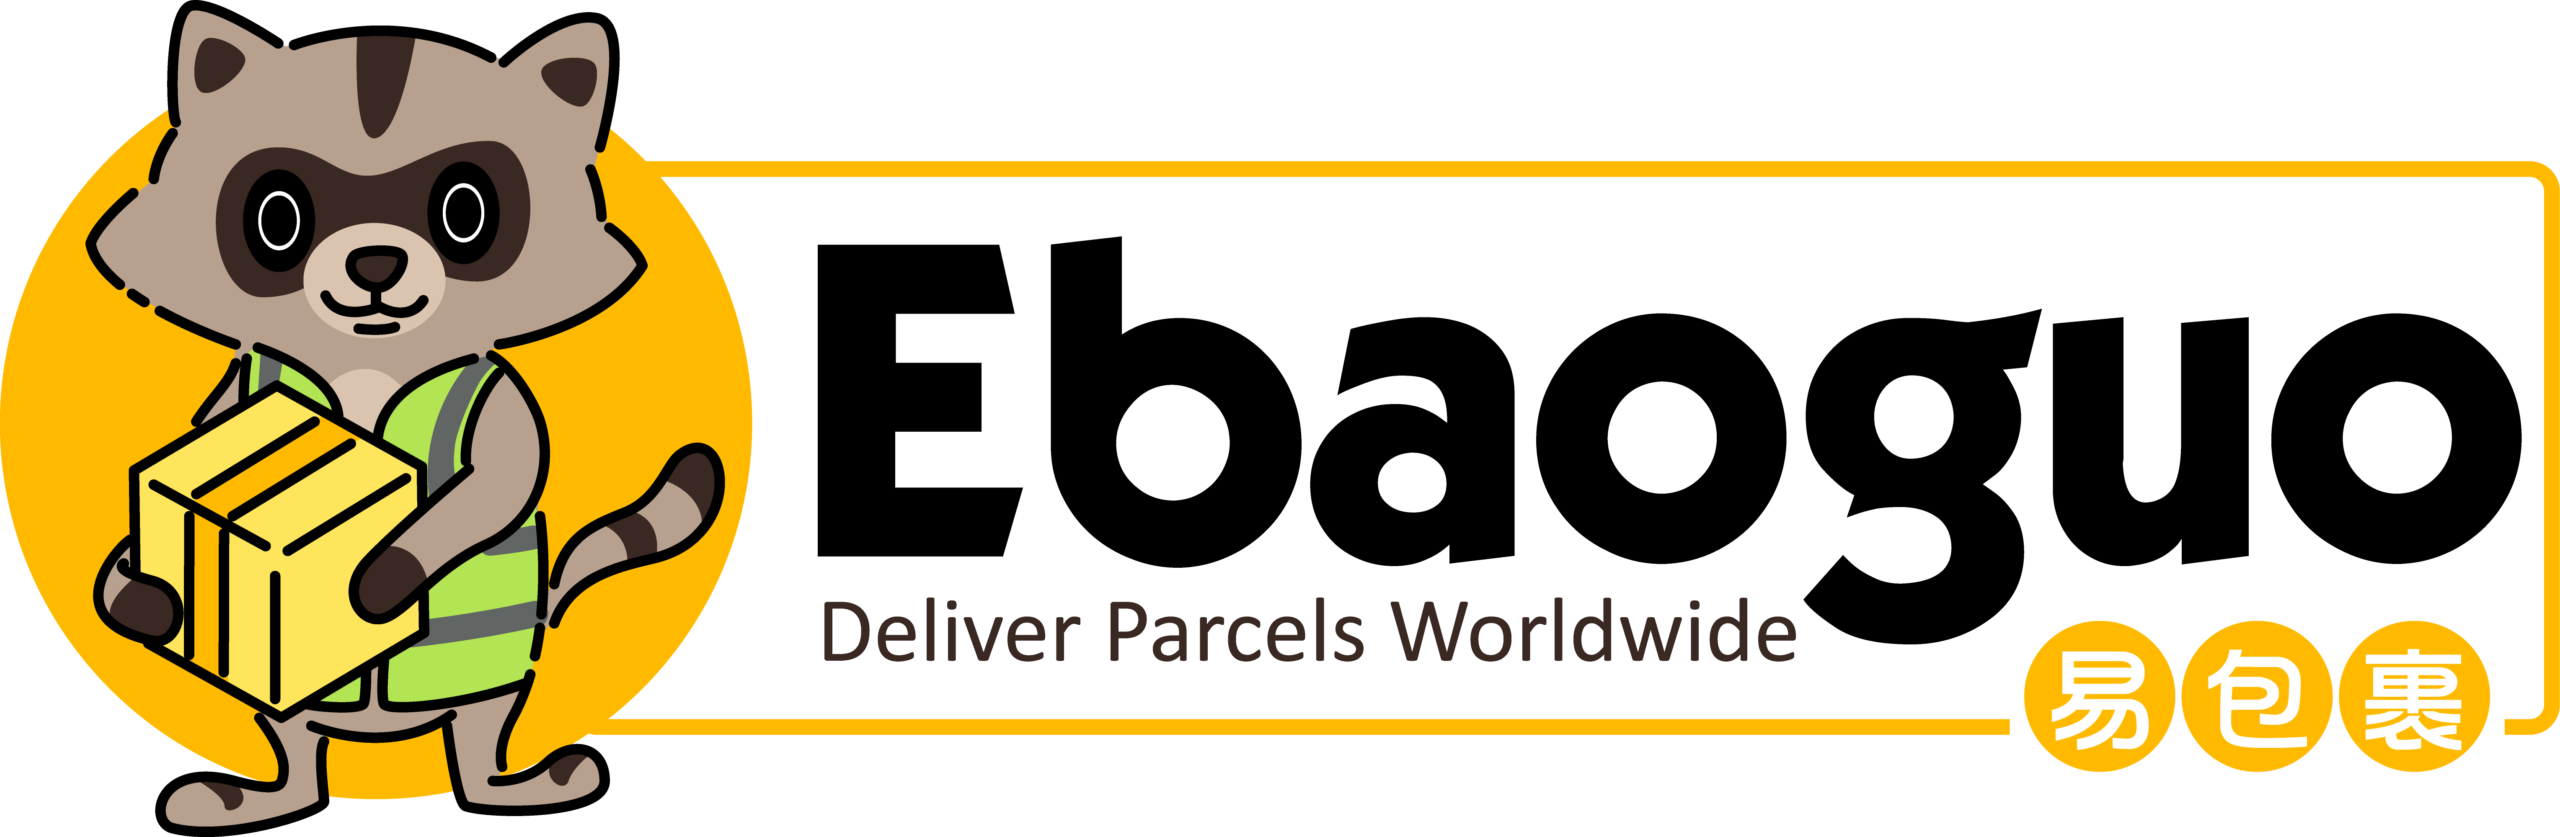 易包裹全球包裹转运服务保险条例及免责声明